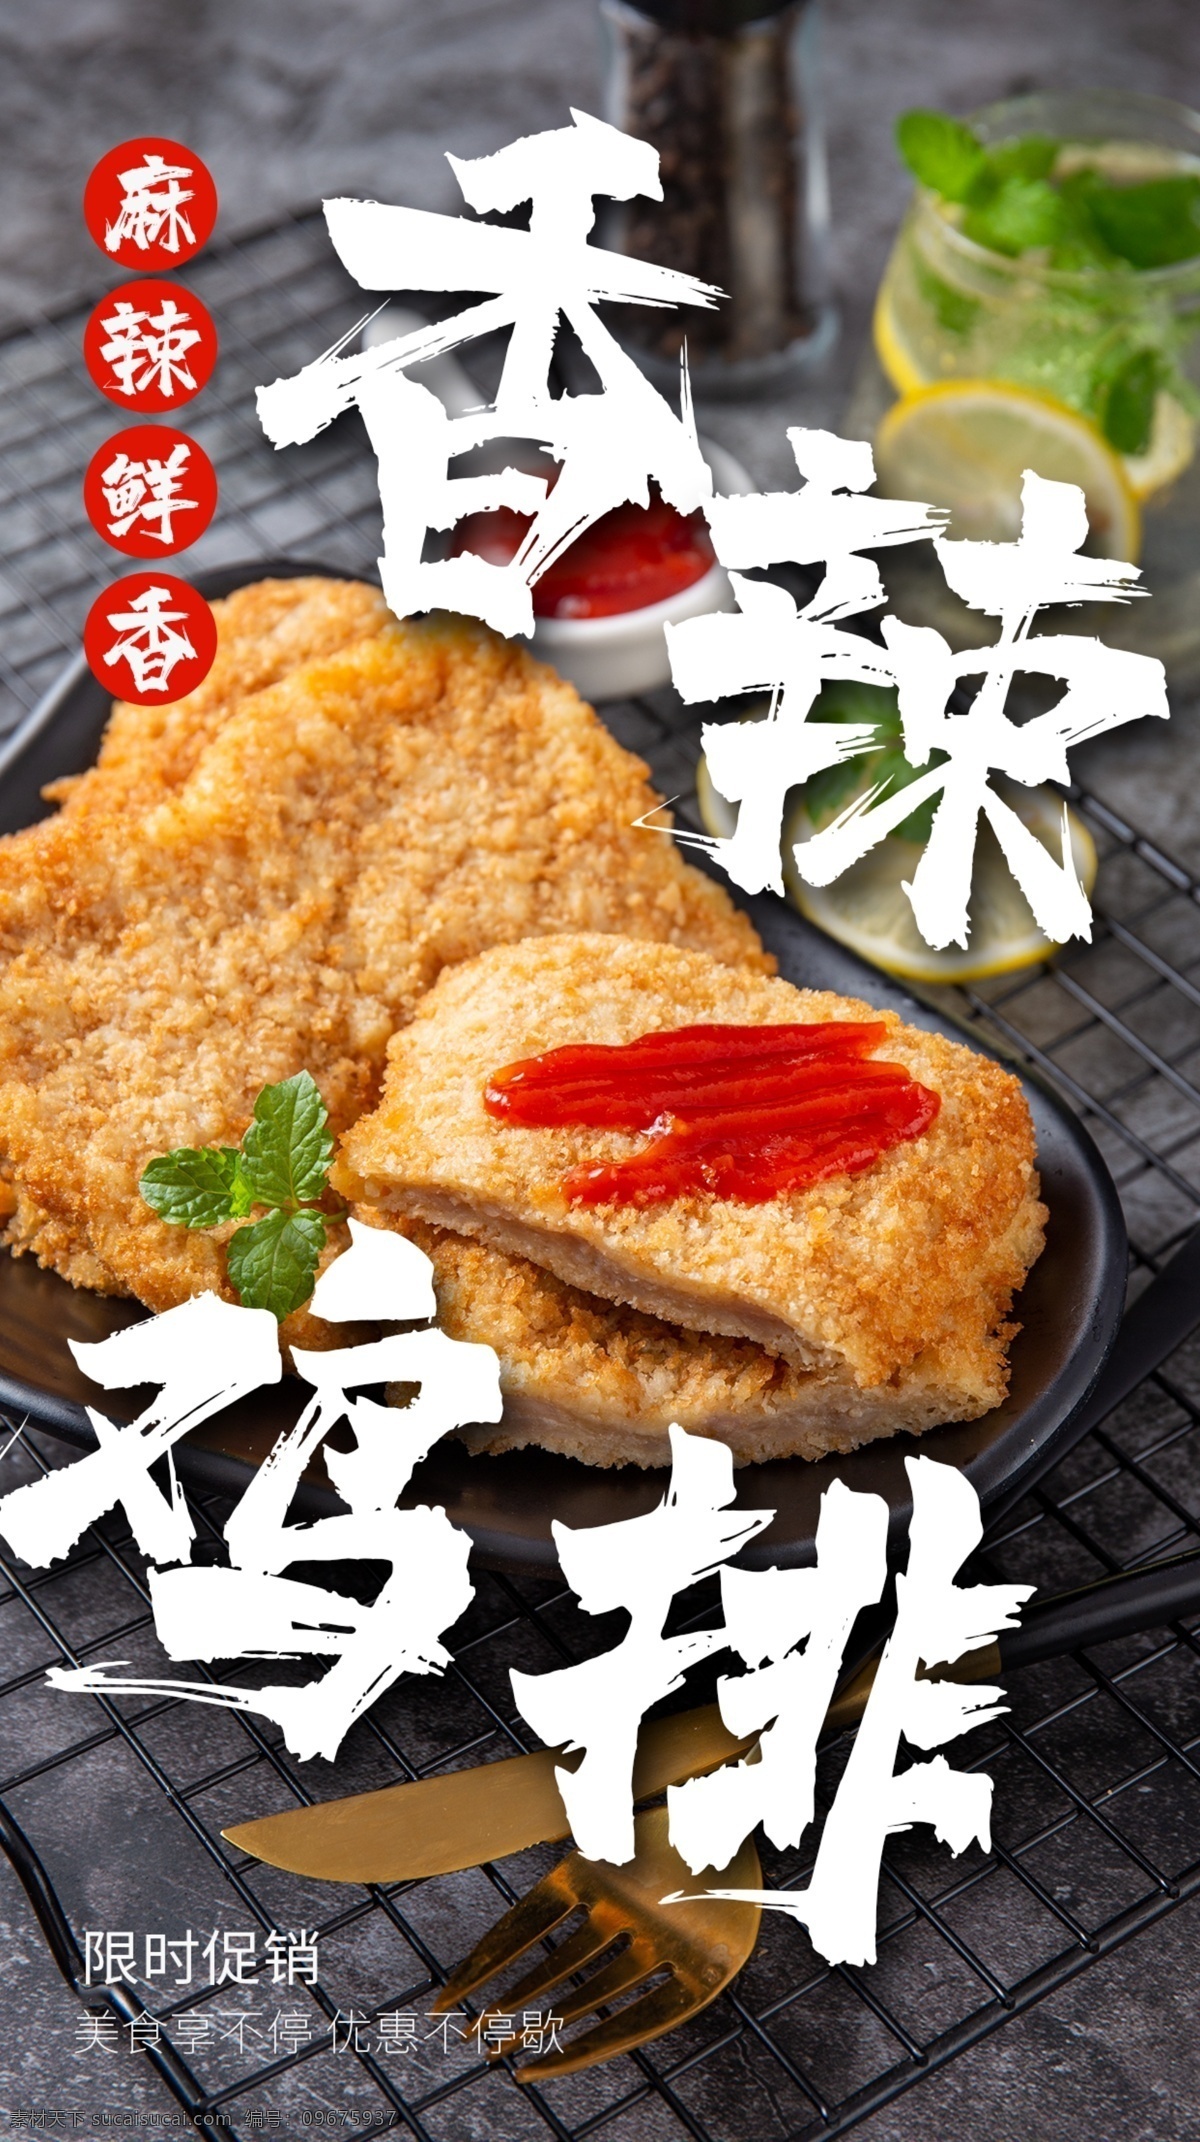 香辣 鸡 排 美食 食 材 海报 素材图片 香辣鸡排 食材 餐饮美食 类